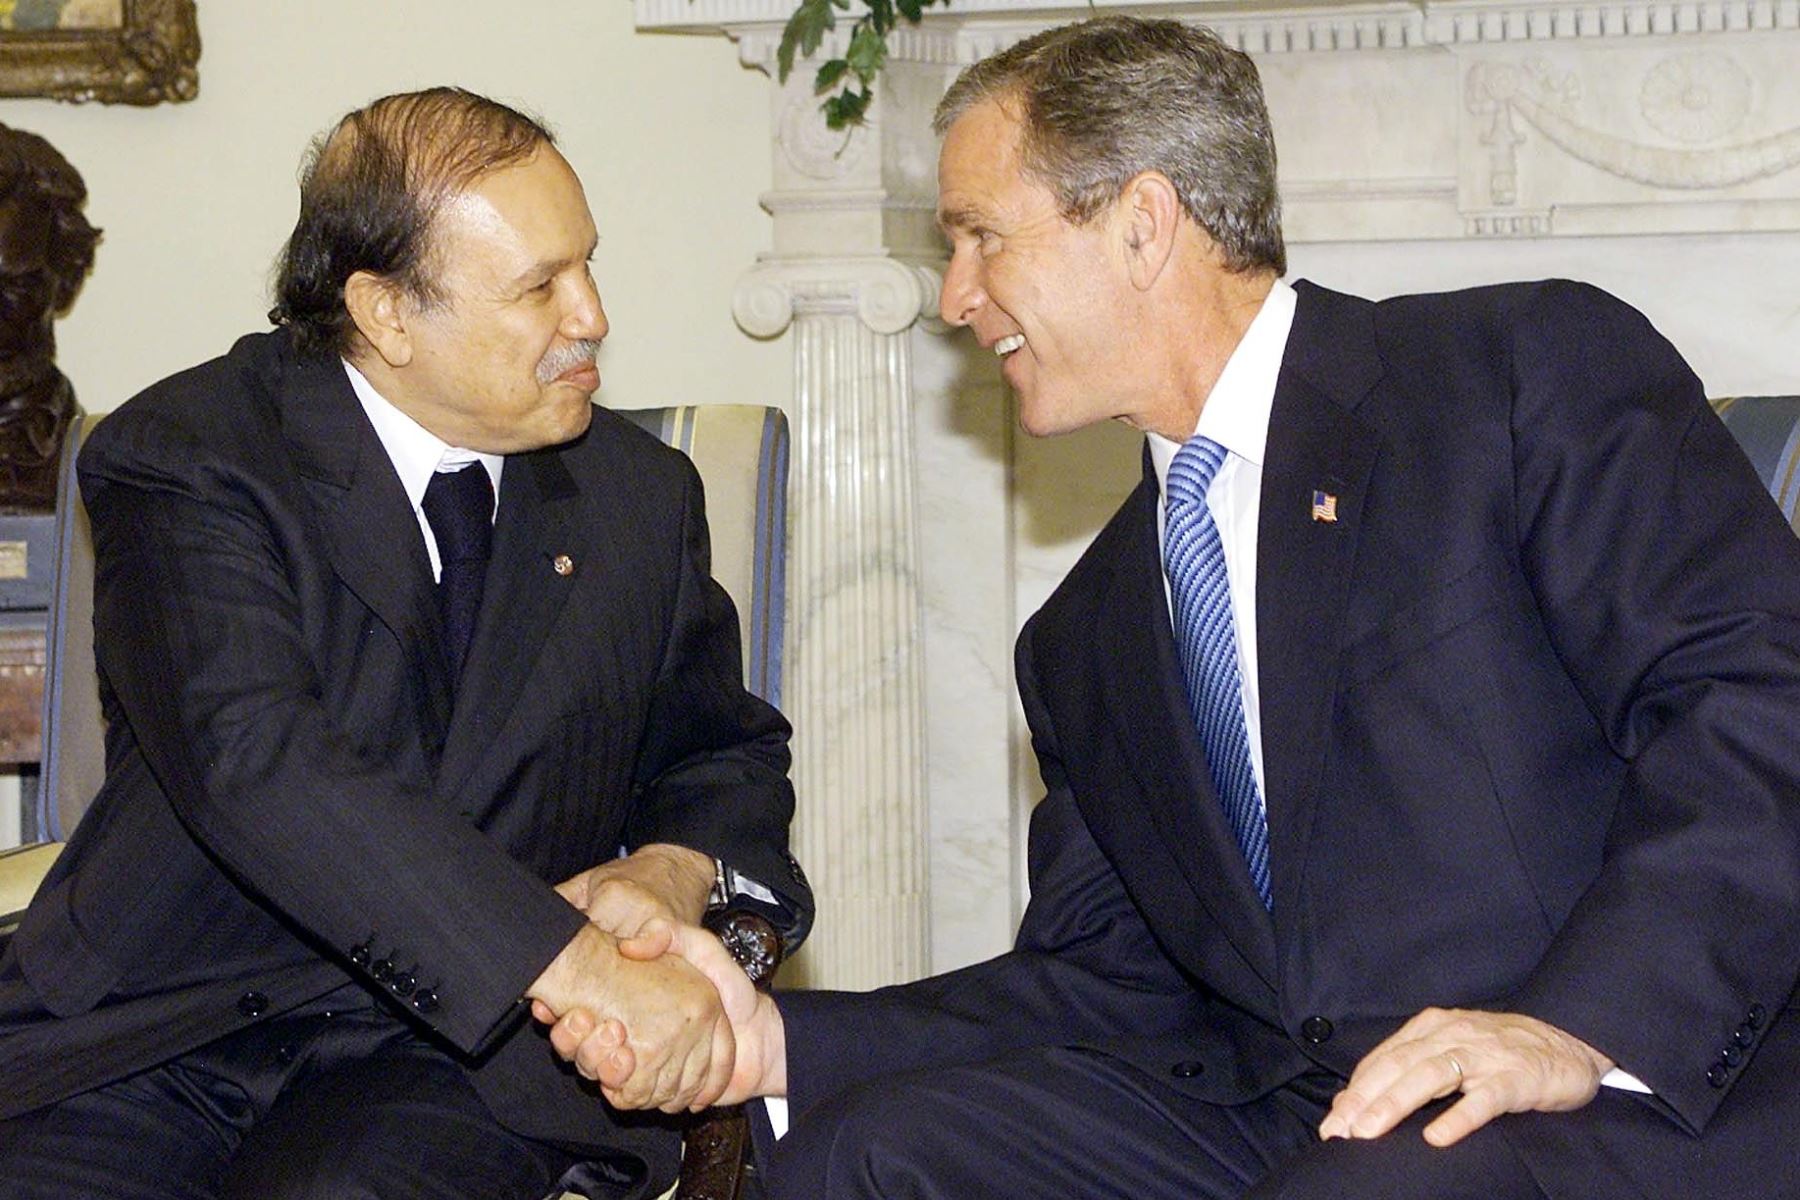 Foto de archivo del 5 de noviembre de 2001 muestra al presidente de los Estados Unidos, George W. Bush, reuniéndose con el presidente de Argelia, Abdelaziz Bouteflika, en la Casa Blanca en Washington, DC. Foto: AFP